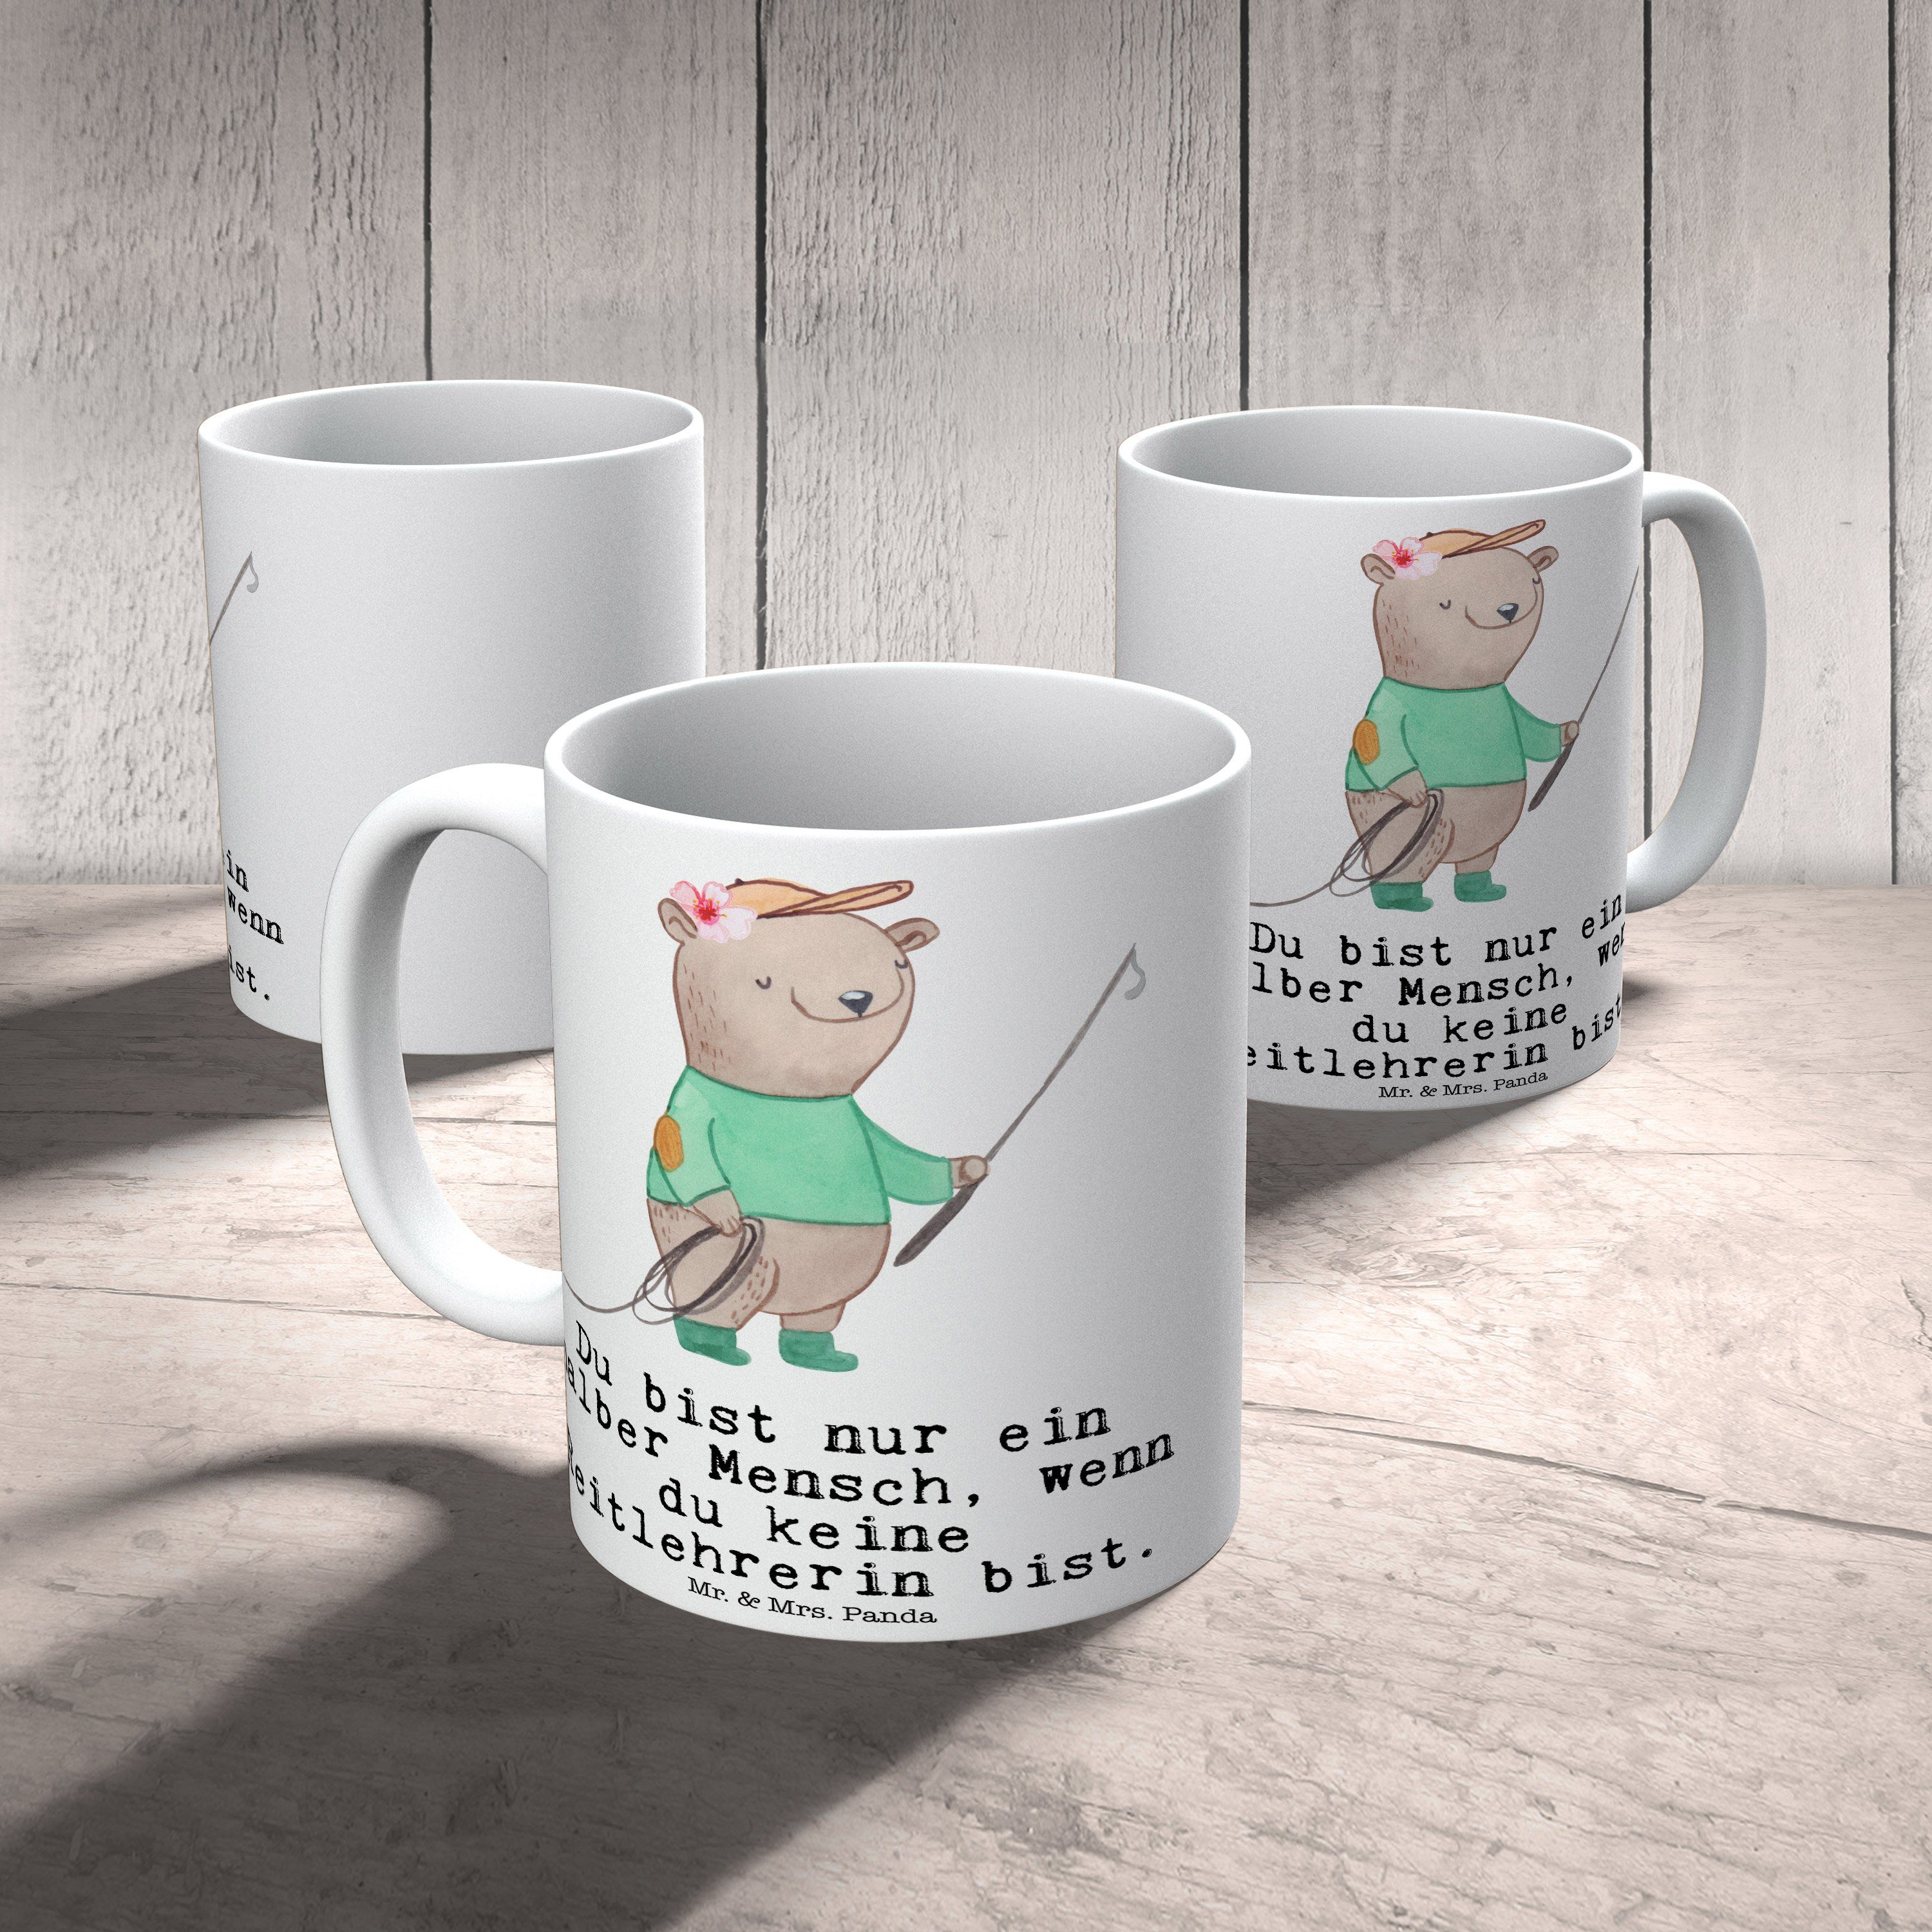 Mr. & Mrs. Panda Tasse Kaffeetasse, Herz mit - Reitlehrerin Keramik Sp, Weiß Geschenk, Tasse, Tasse 